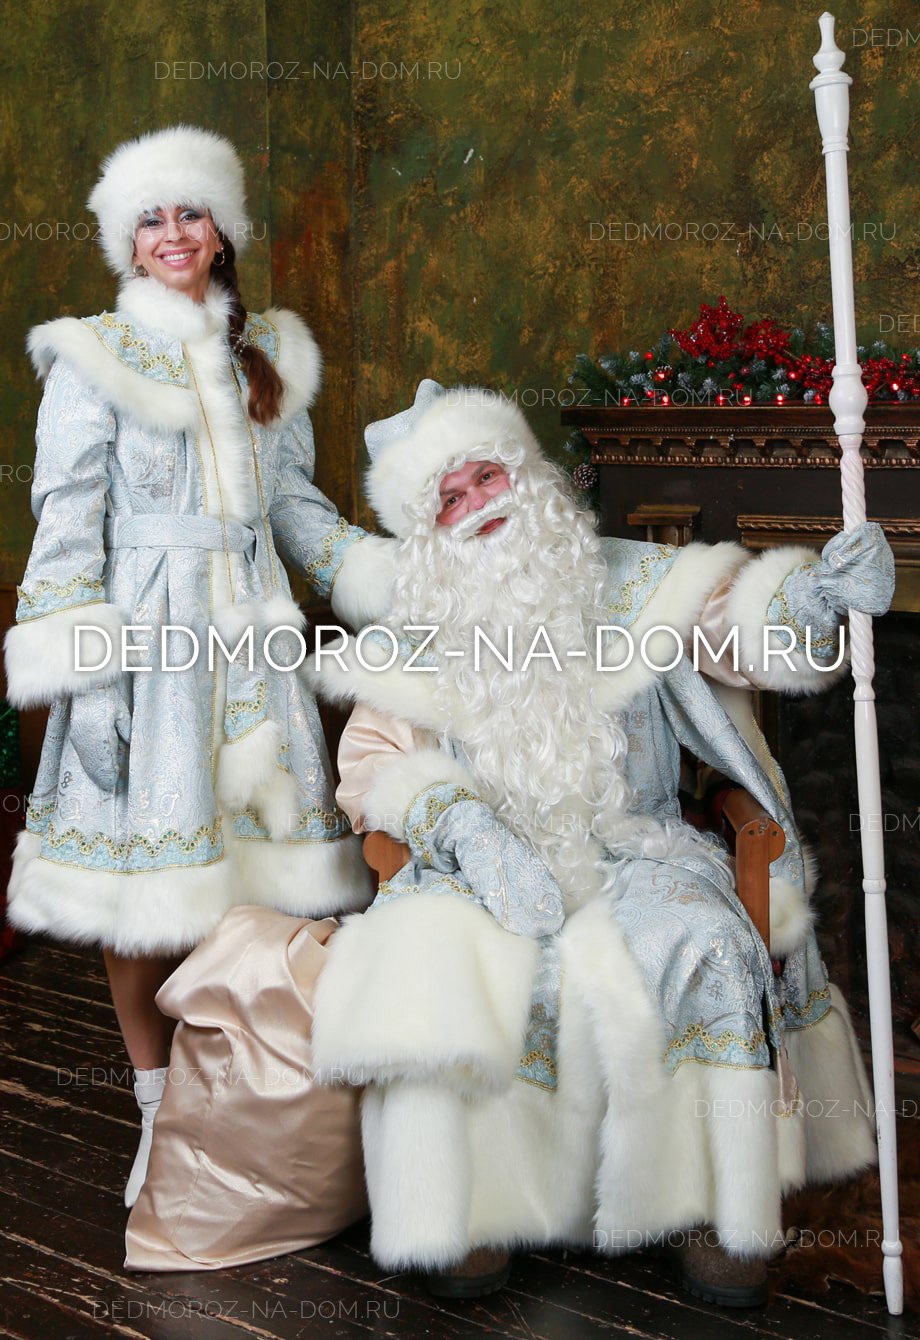 Фото Деда Мороза и Снегурочки настоящих в серебристых костюмах